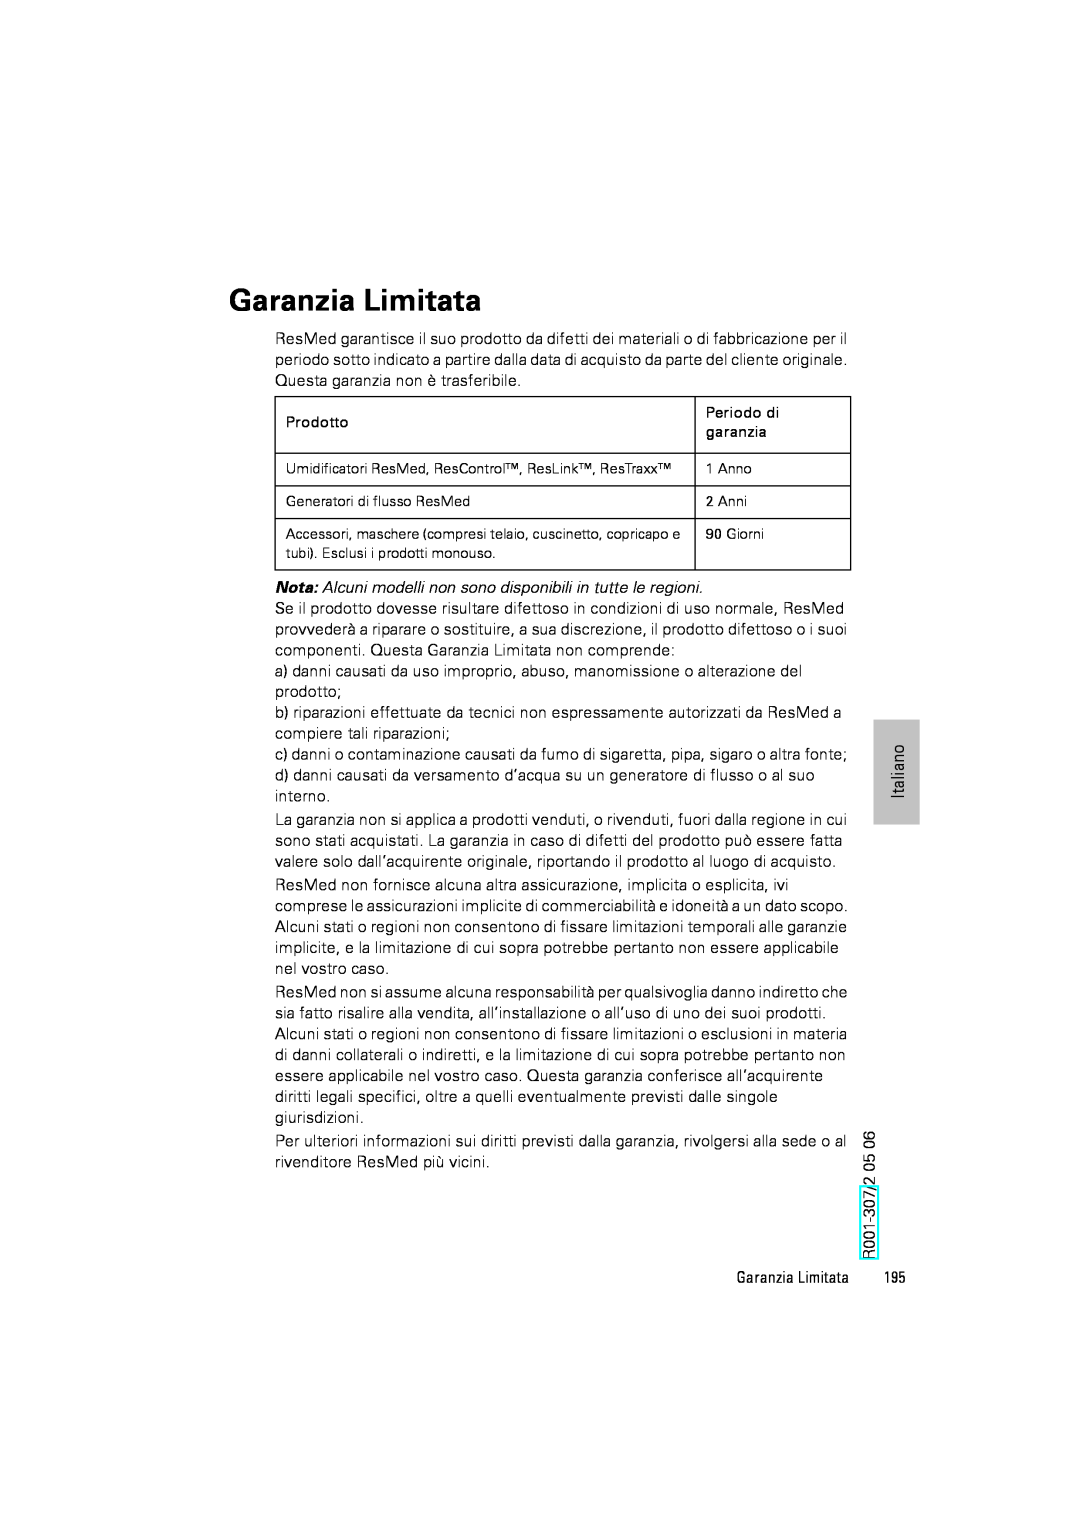 ResMed III & III ST user manual Garanzia Limitata 